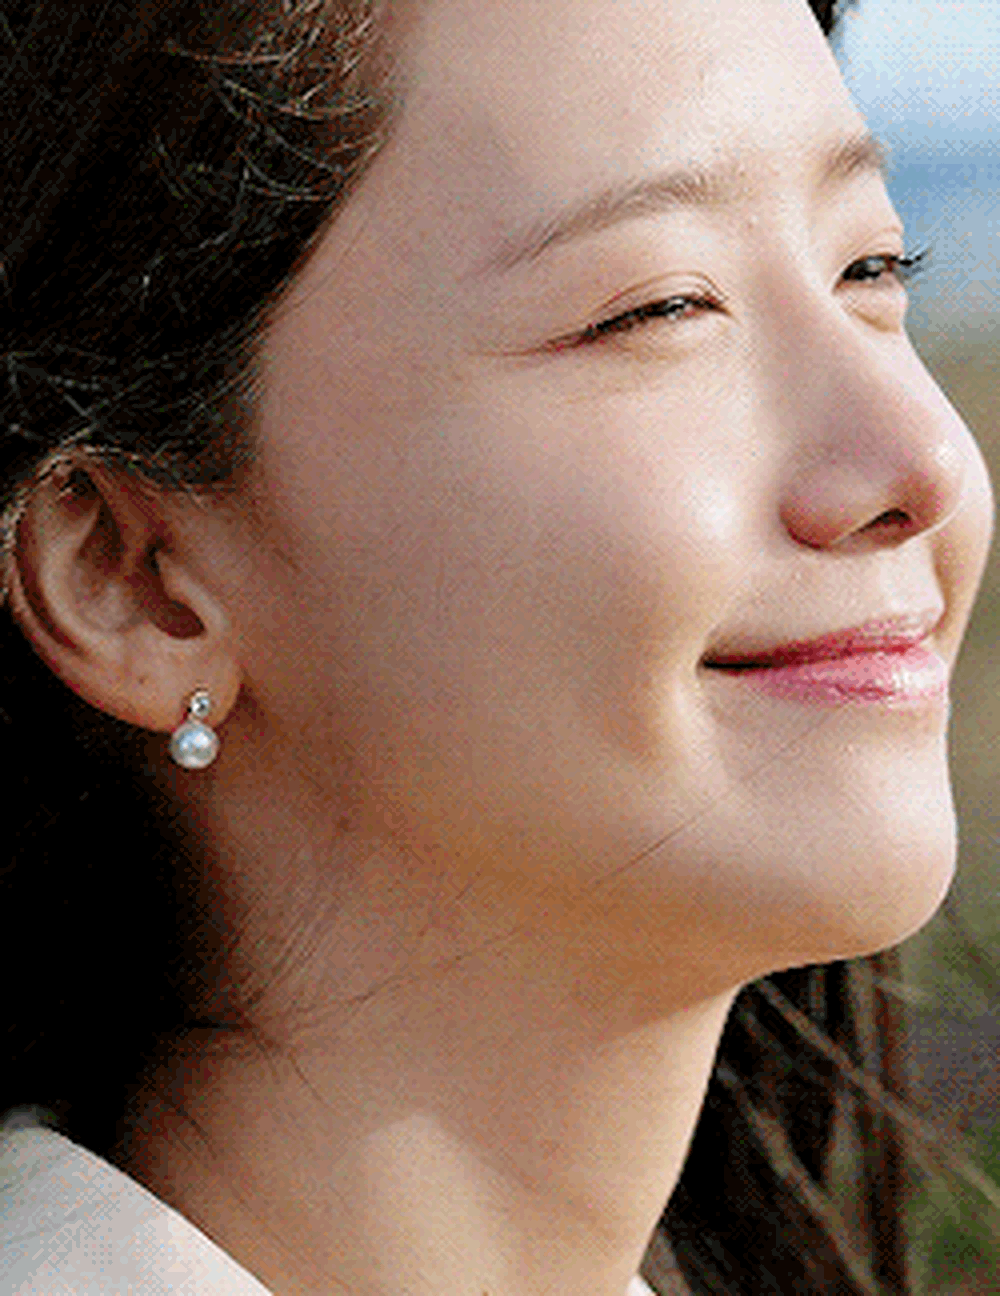  7 mỹ nhân đẹp nhất phim Hàn đầu 2023: Song Hye Kyo gây tranh cãi, cô số 2 thắng lớn nhờ nhan sắc - Ảnh 5.